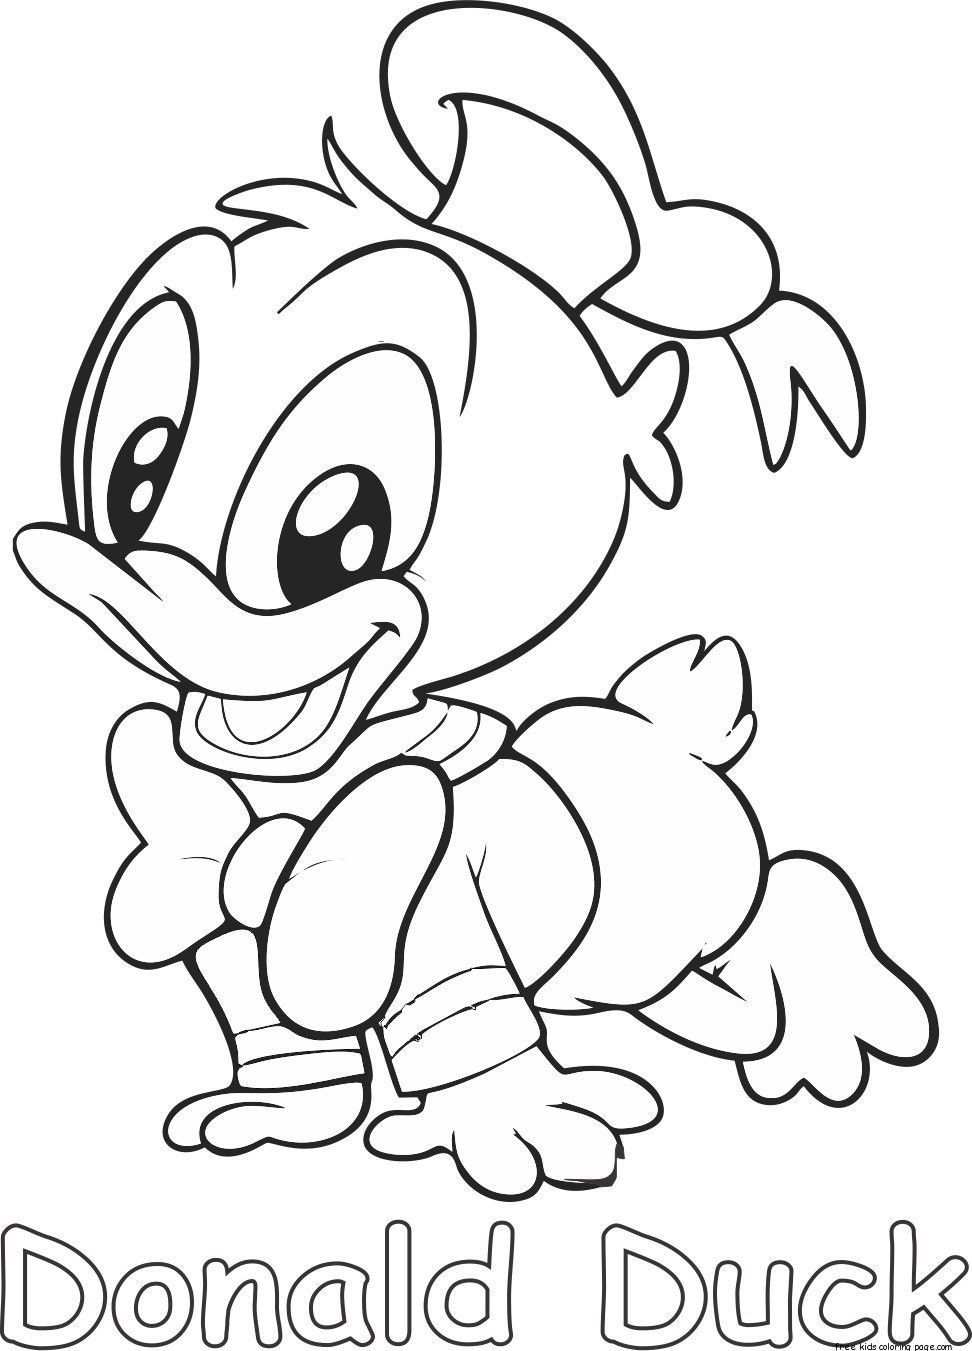 25 Zoeken Donald Duck Baby Kleurplaat Met Afbeeldingen